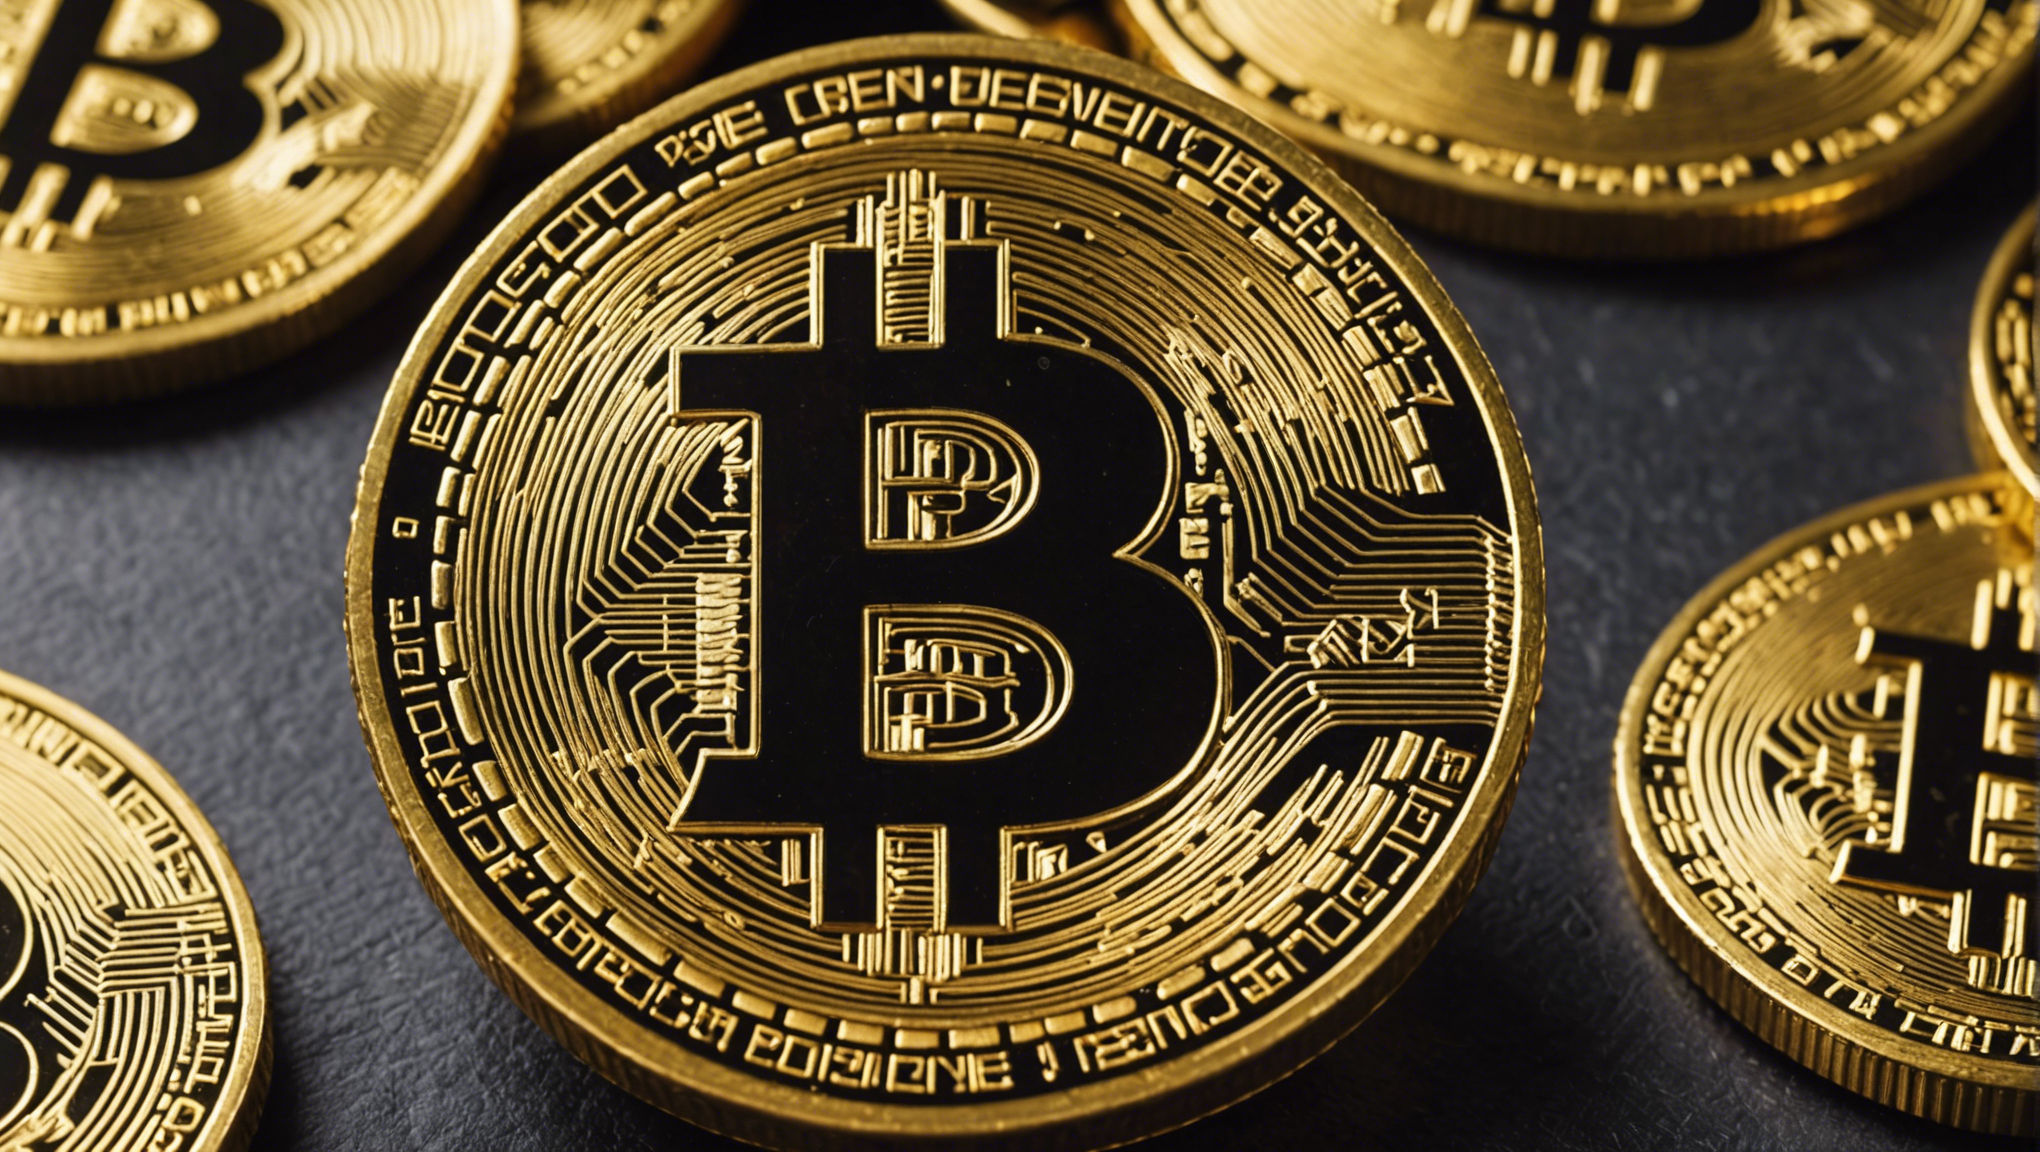 kaufen sie bitcoin: wie und wo kann man bitcoin kaufen?